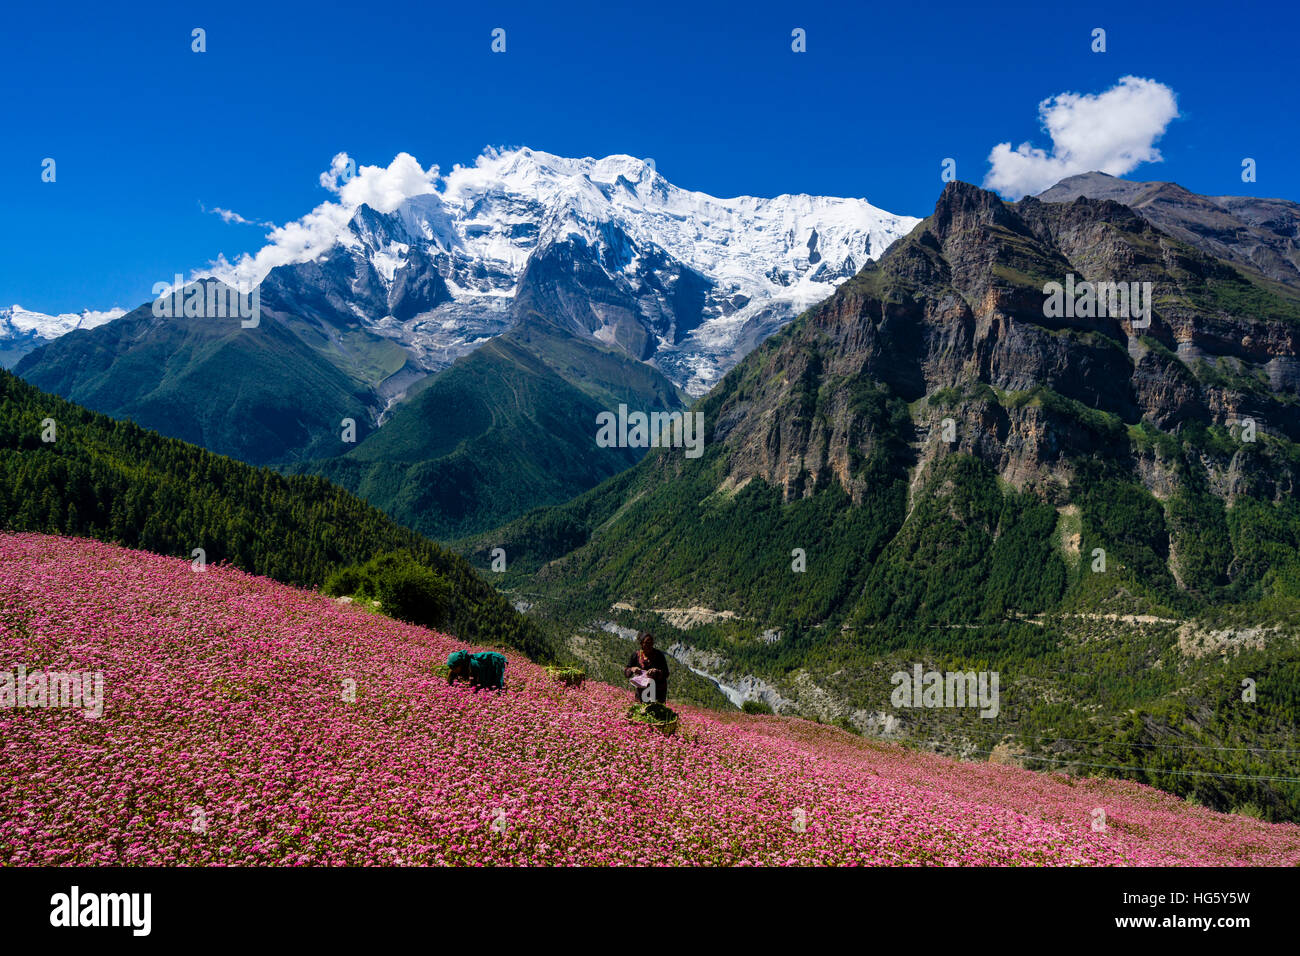 Ferme avec des champs de sarrasin rose en fleurs, Upper Marsyangdi, vallée de l'Annapurna en montagne 2 distance, Ghyaru Banque D'Images